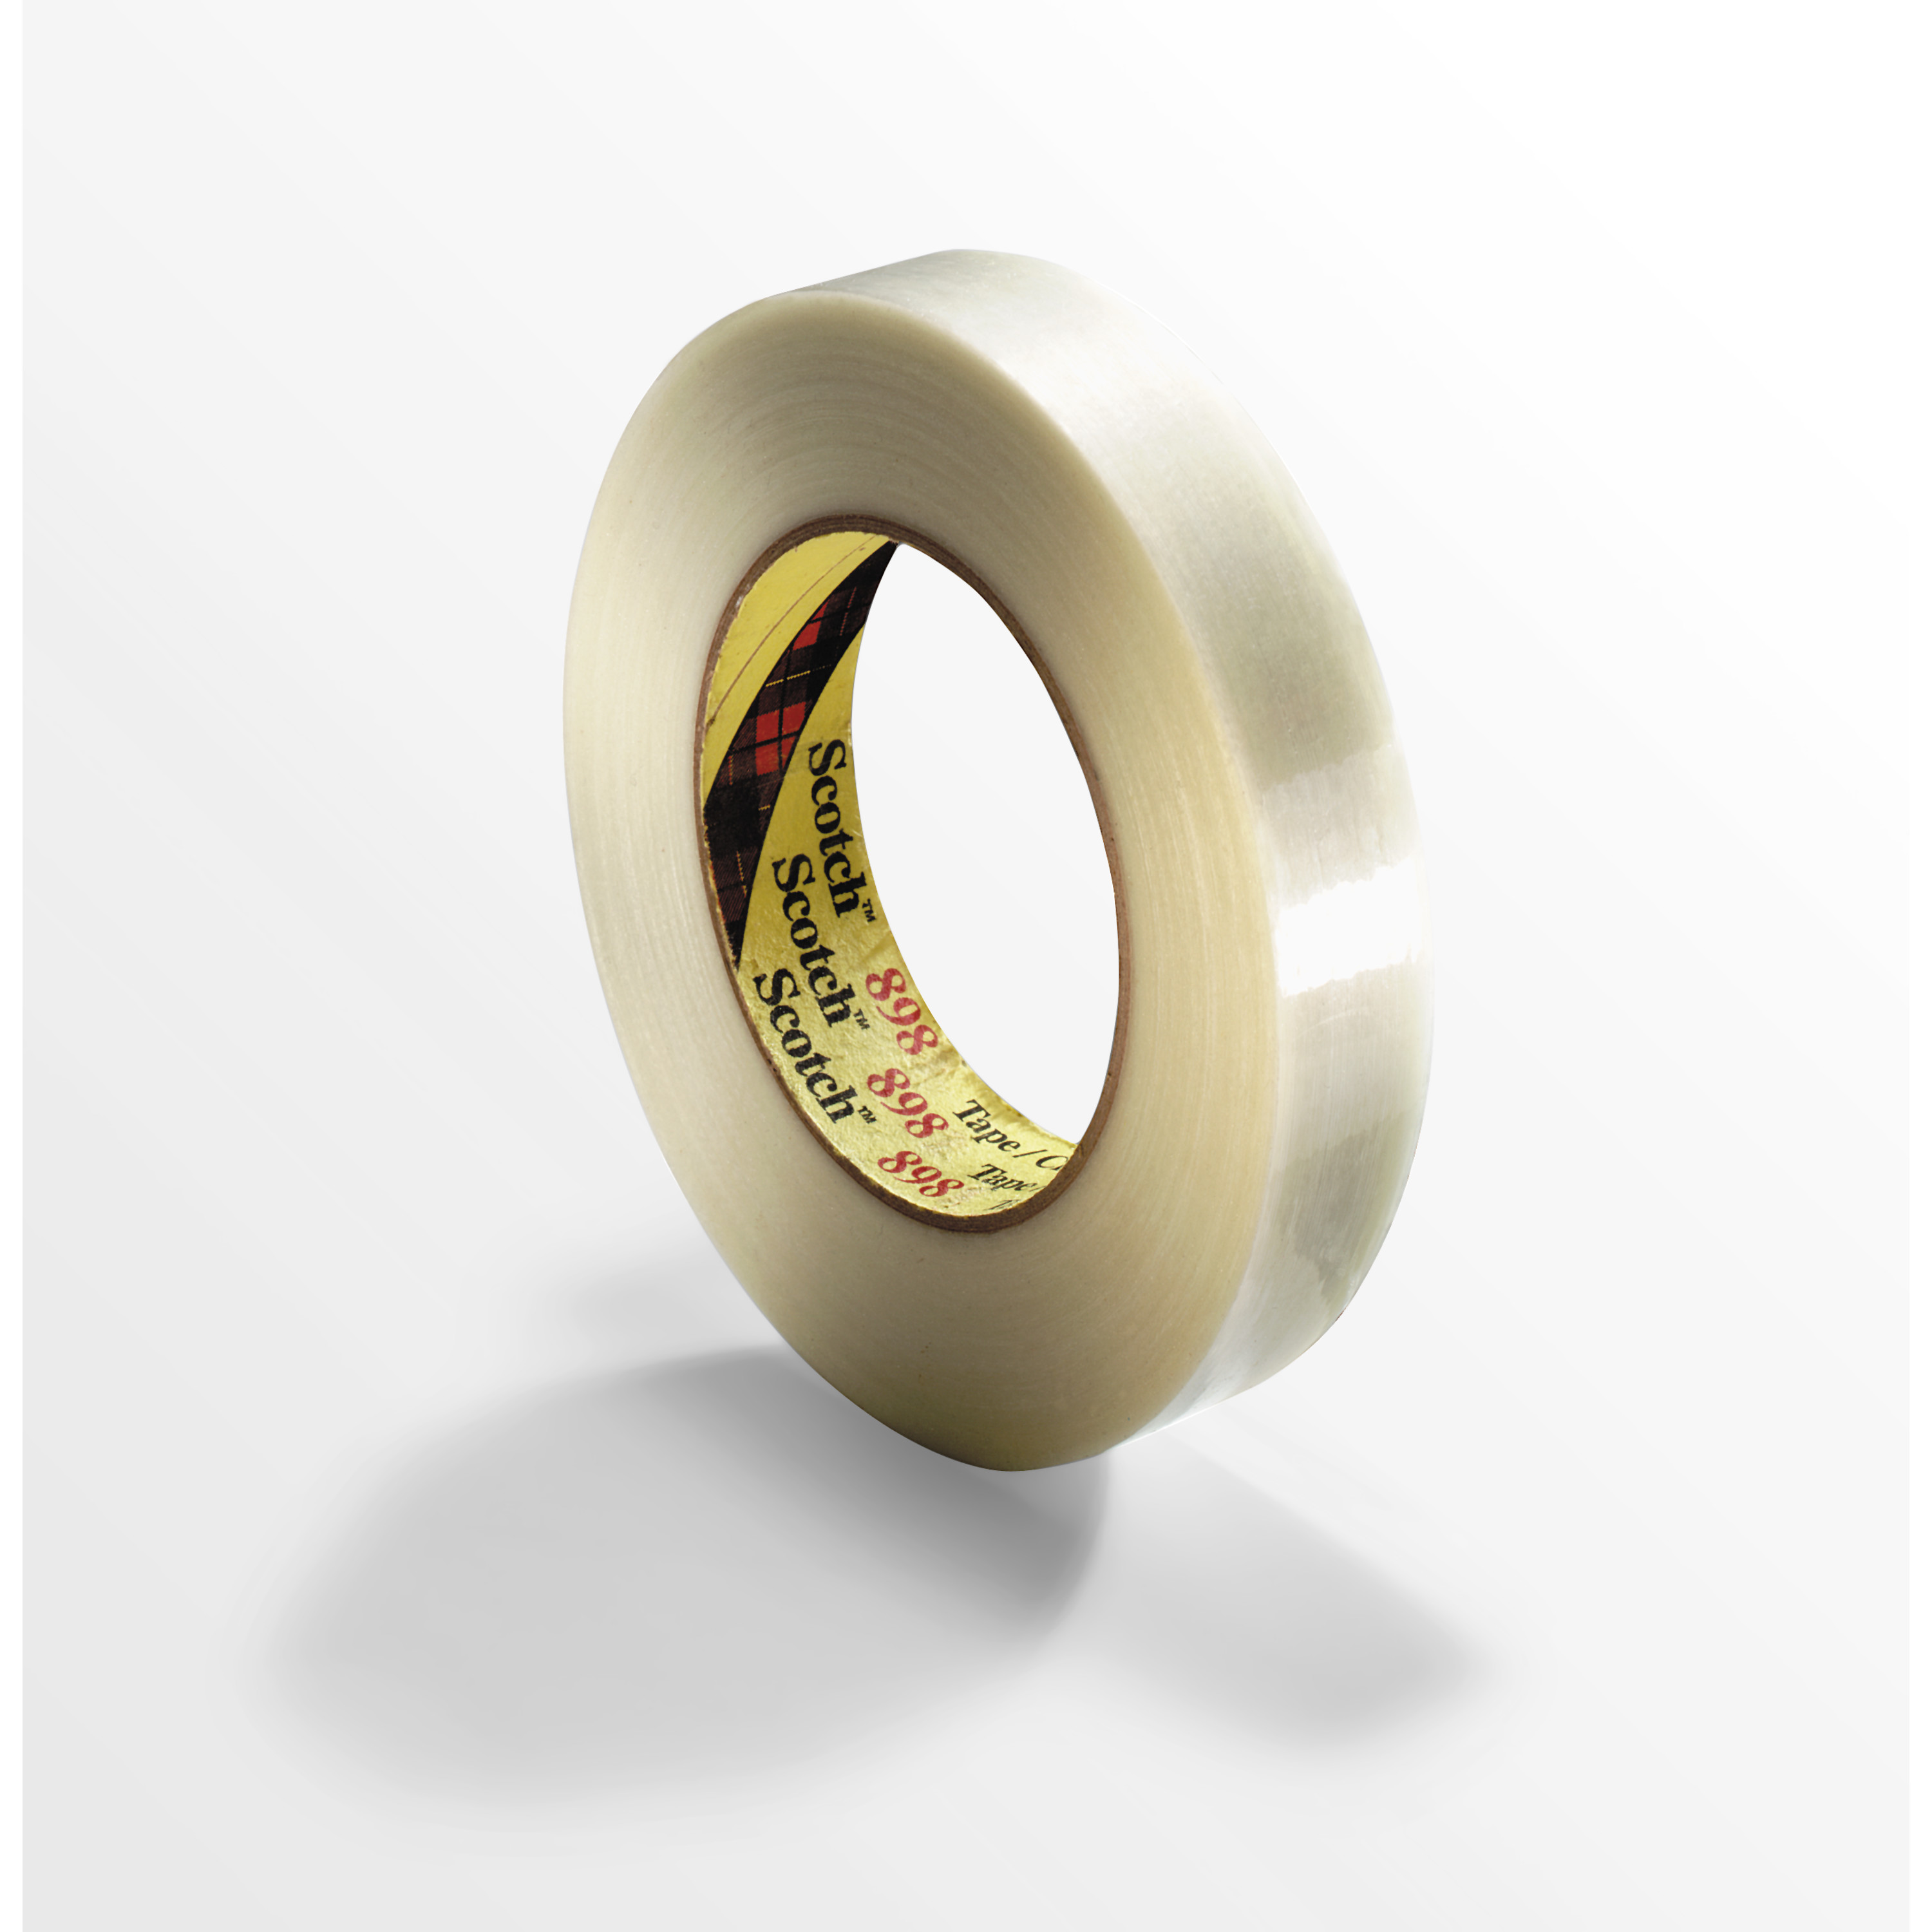 Scotch® Filament Tape 898, Clear, 24 mm x 55 m, 6.6 mil, 36 rolls per
case